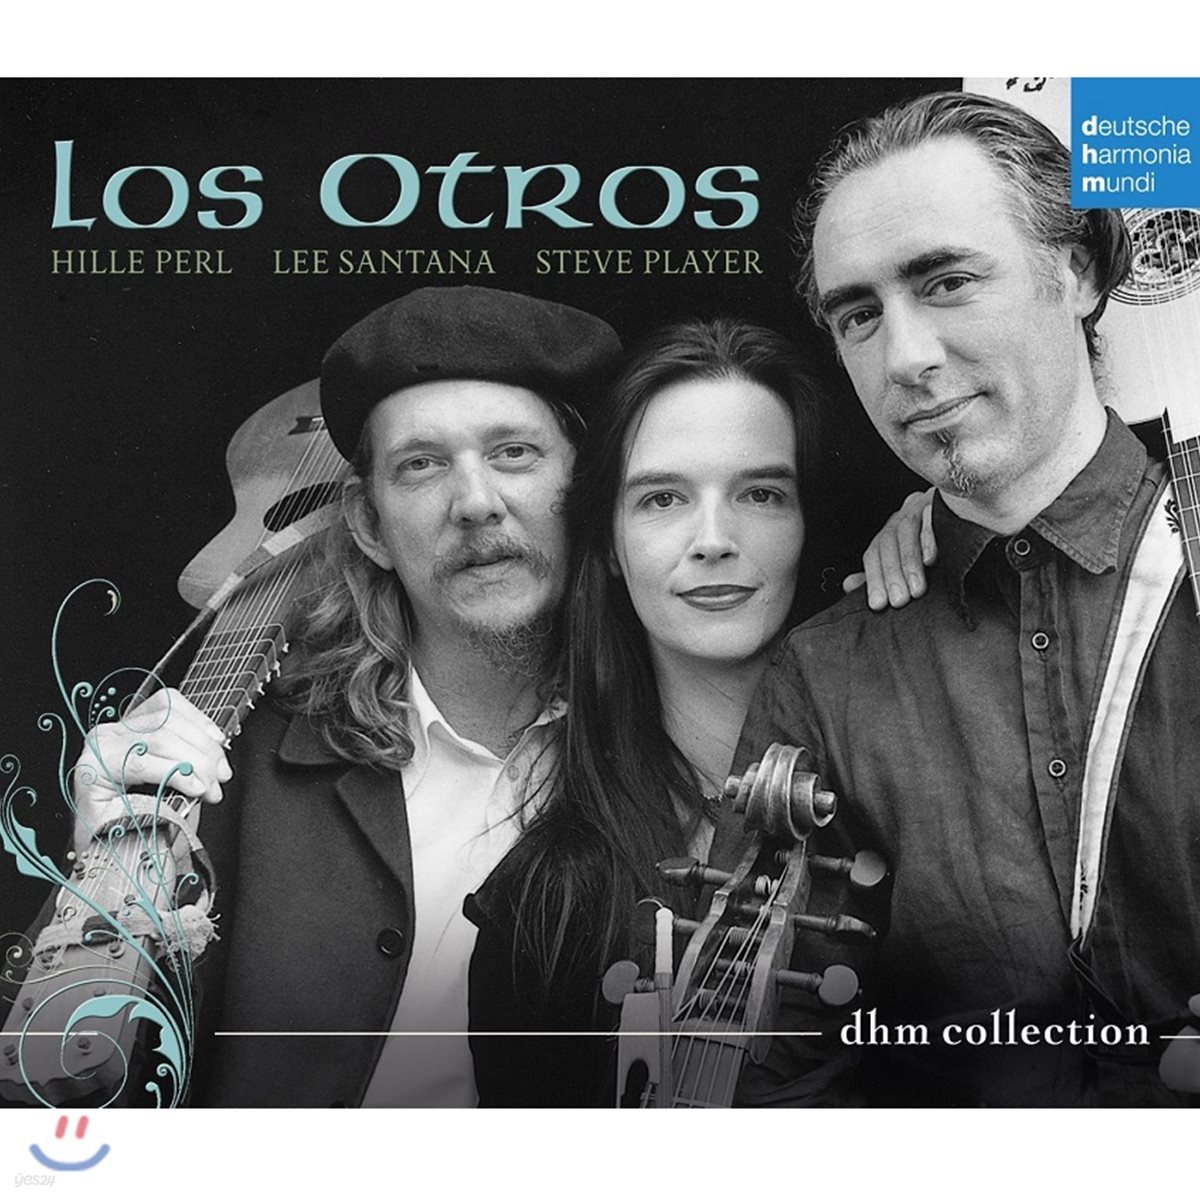 Los Otros 로스 오트로스 - DHM 컬렉션 (DHM Collection)